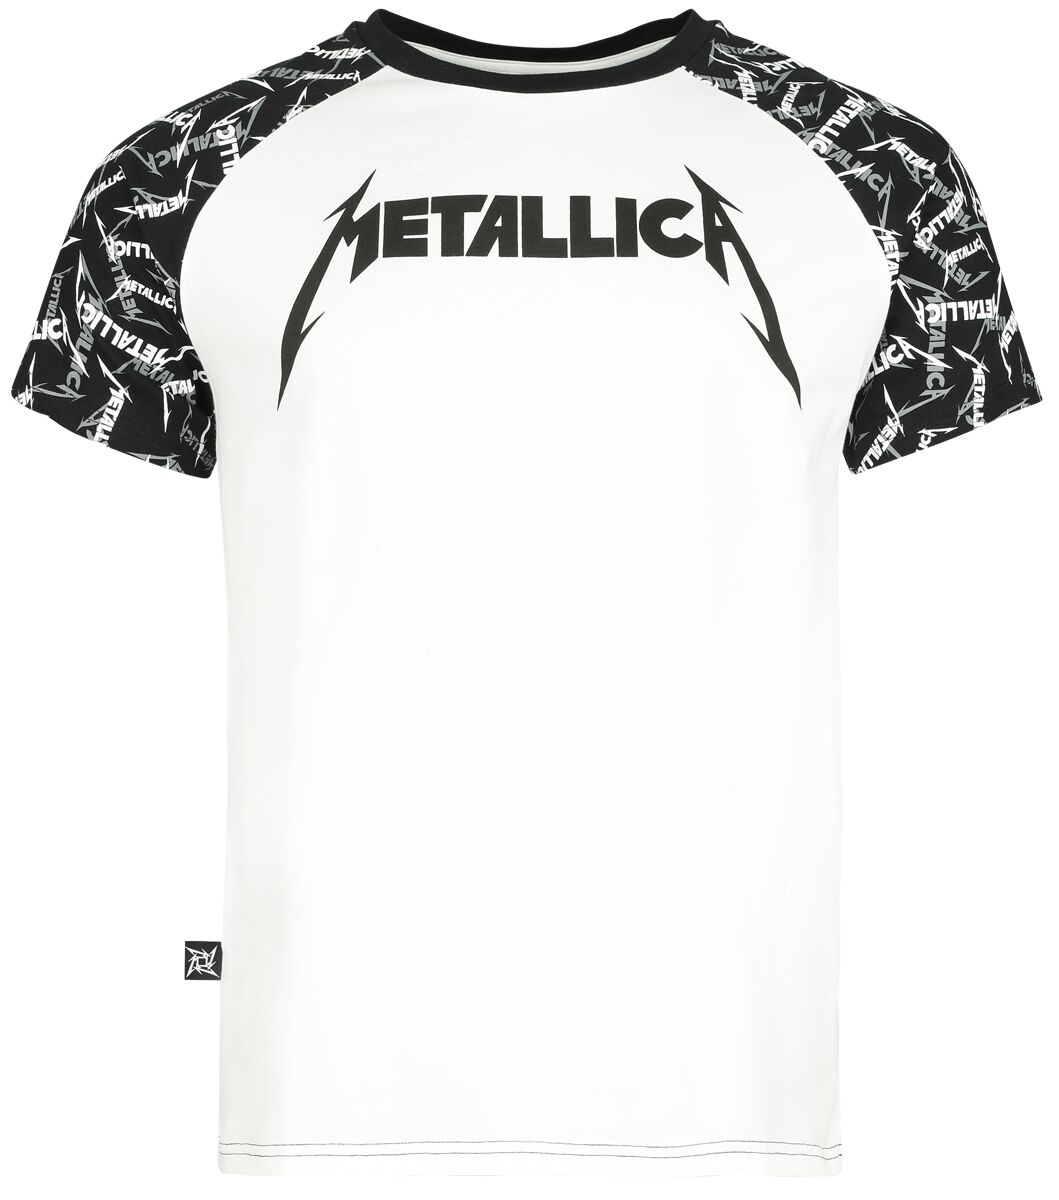 Metallica T-Shirt - EMP Signature Collection - S bis 5XL - für Männer - Größe XXL - weiß/schwarz  - EMP exklusives Merchandise!